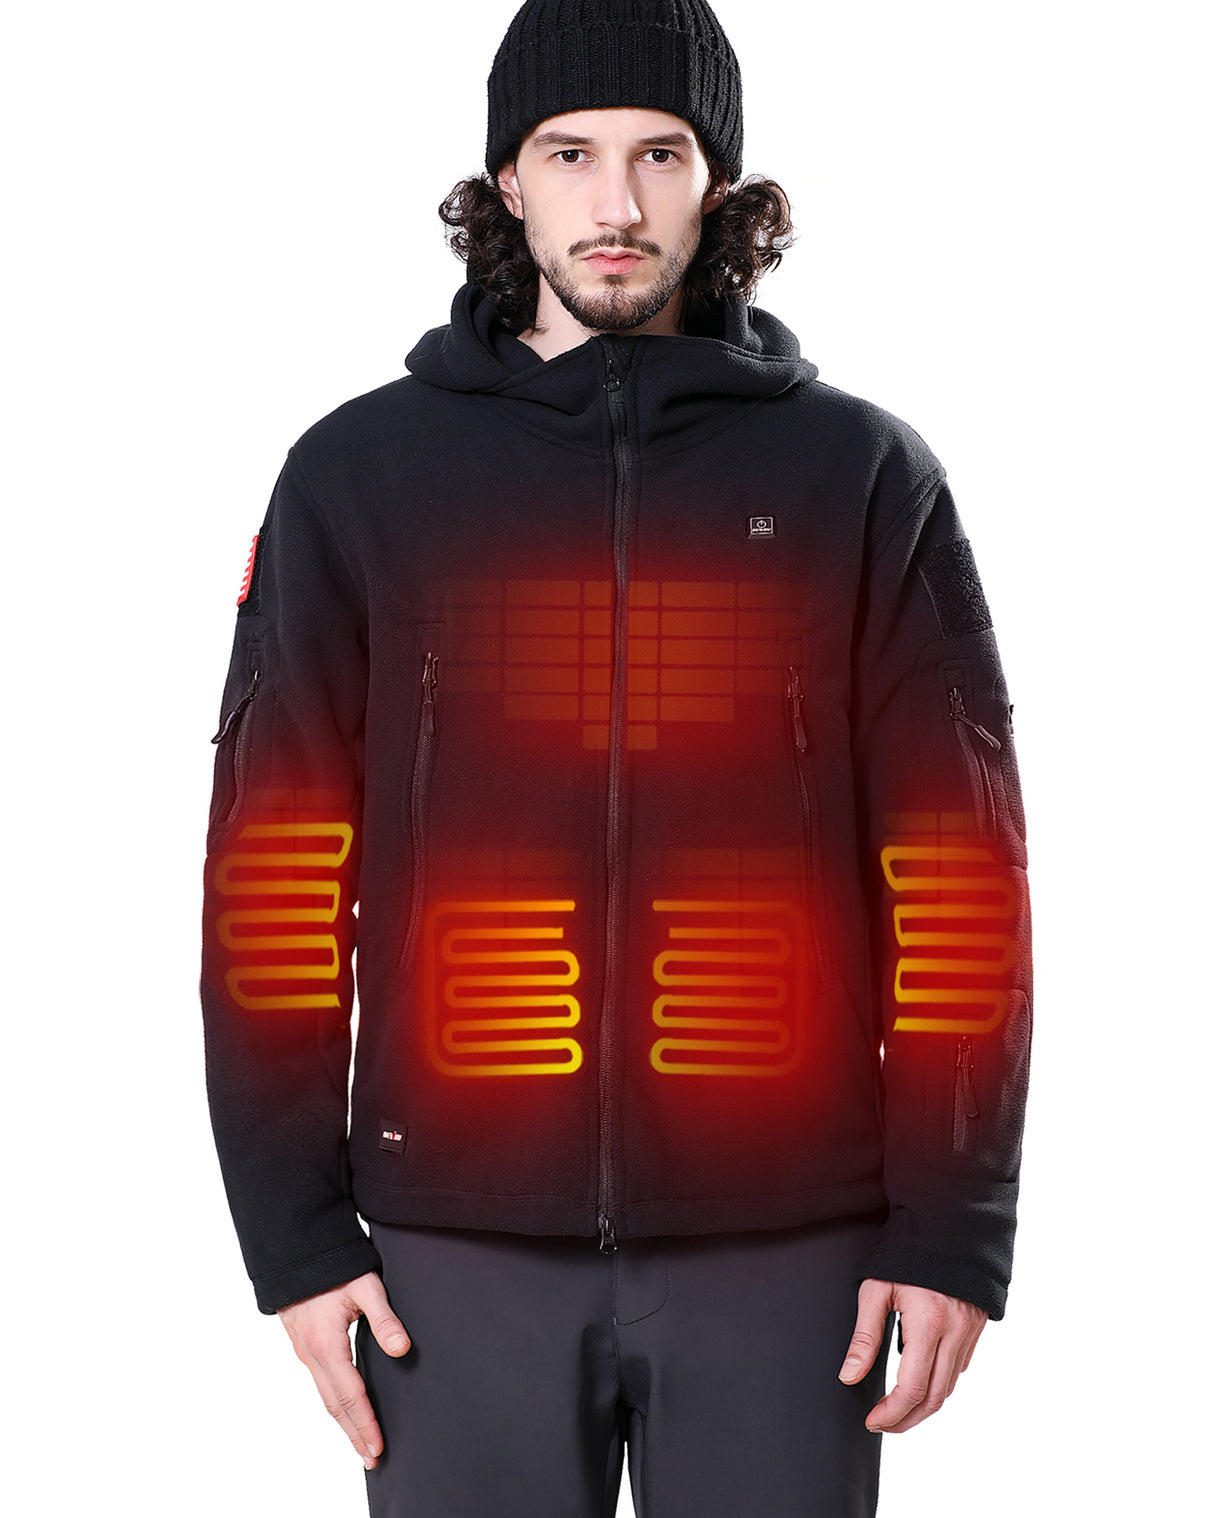 Men's Heated Full-Zip Fleece Jacket with 5200mAh Battery